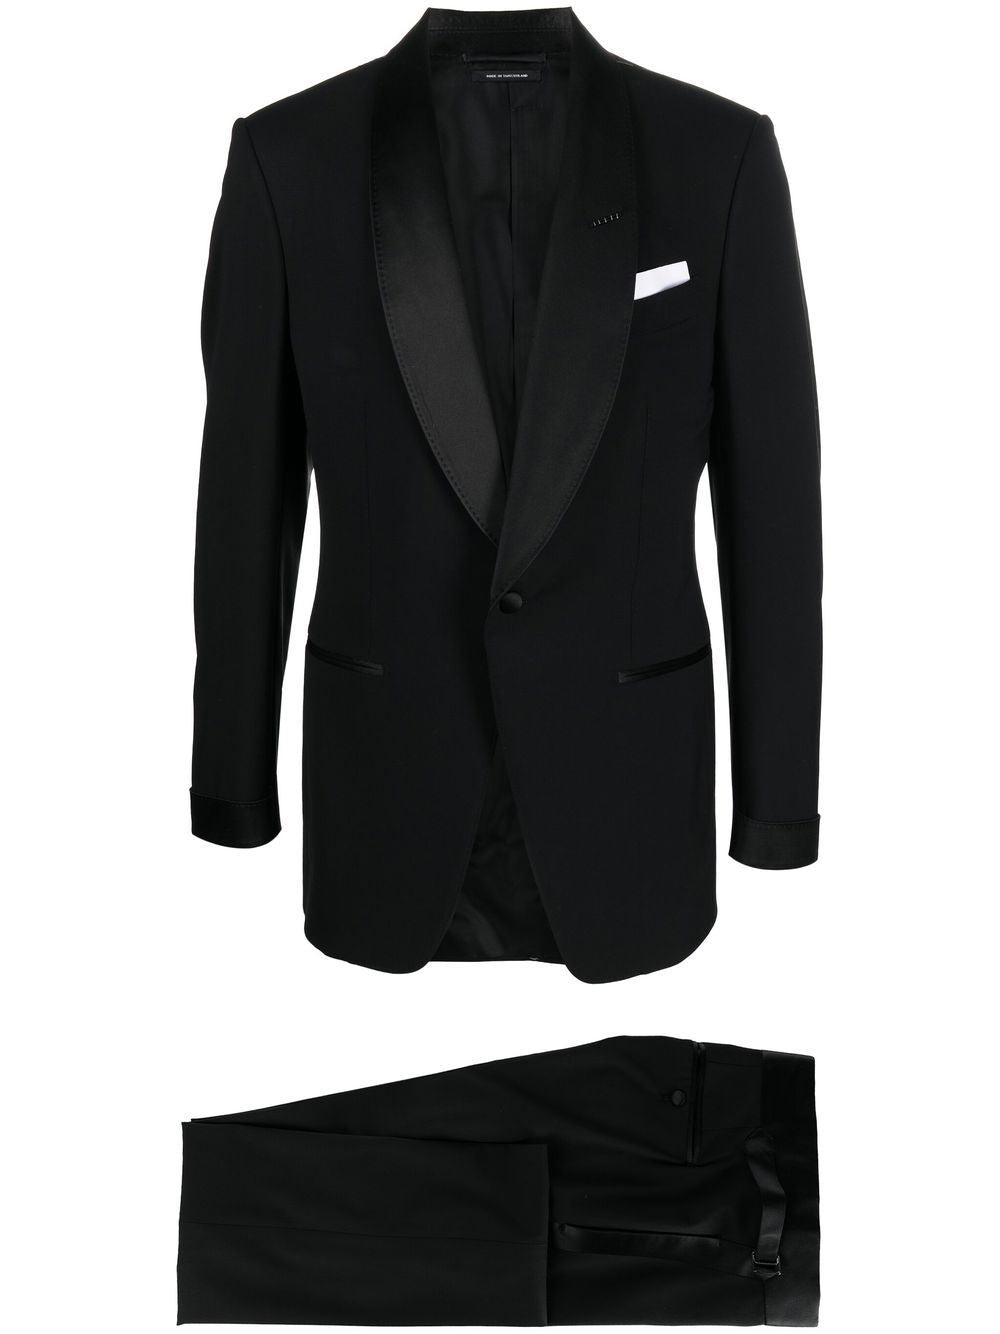 TOM FORD Black Satin Edge Suit for Men FW22